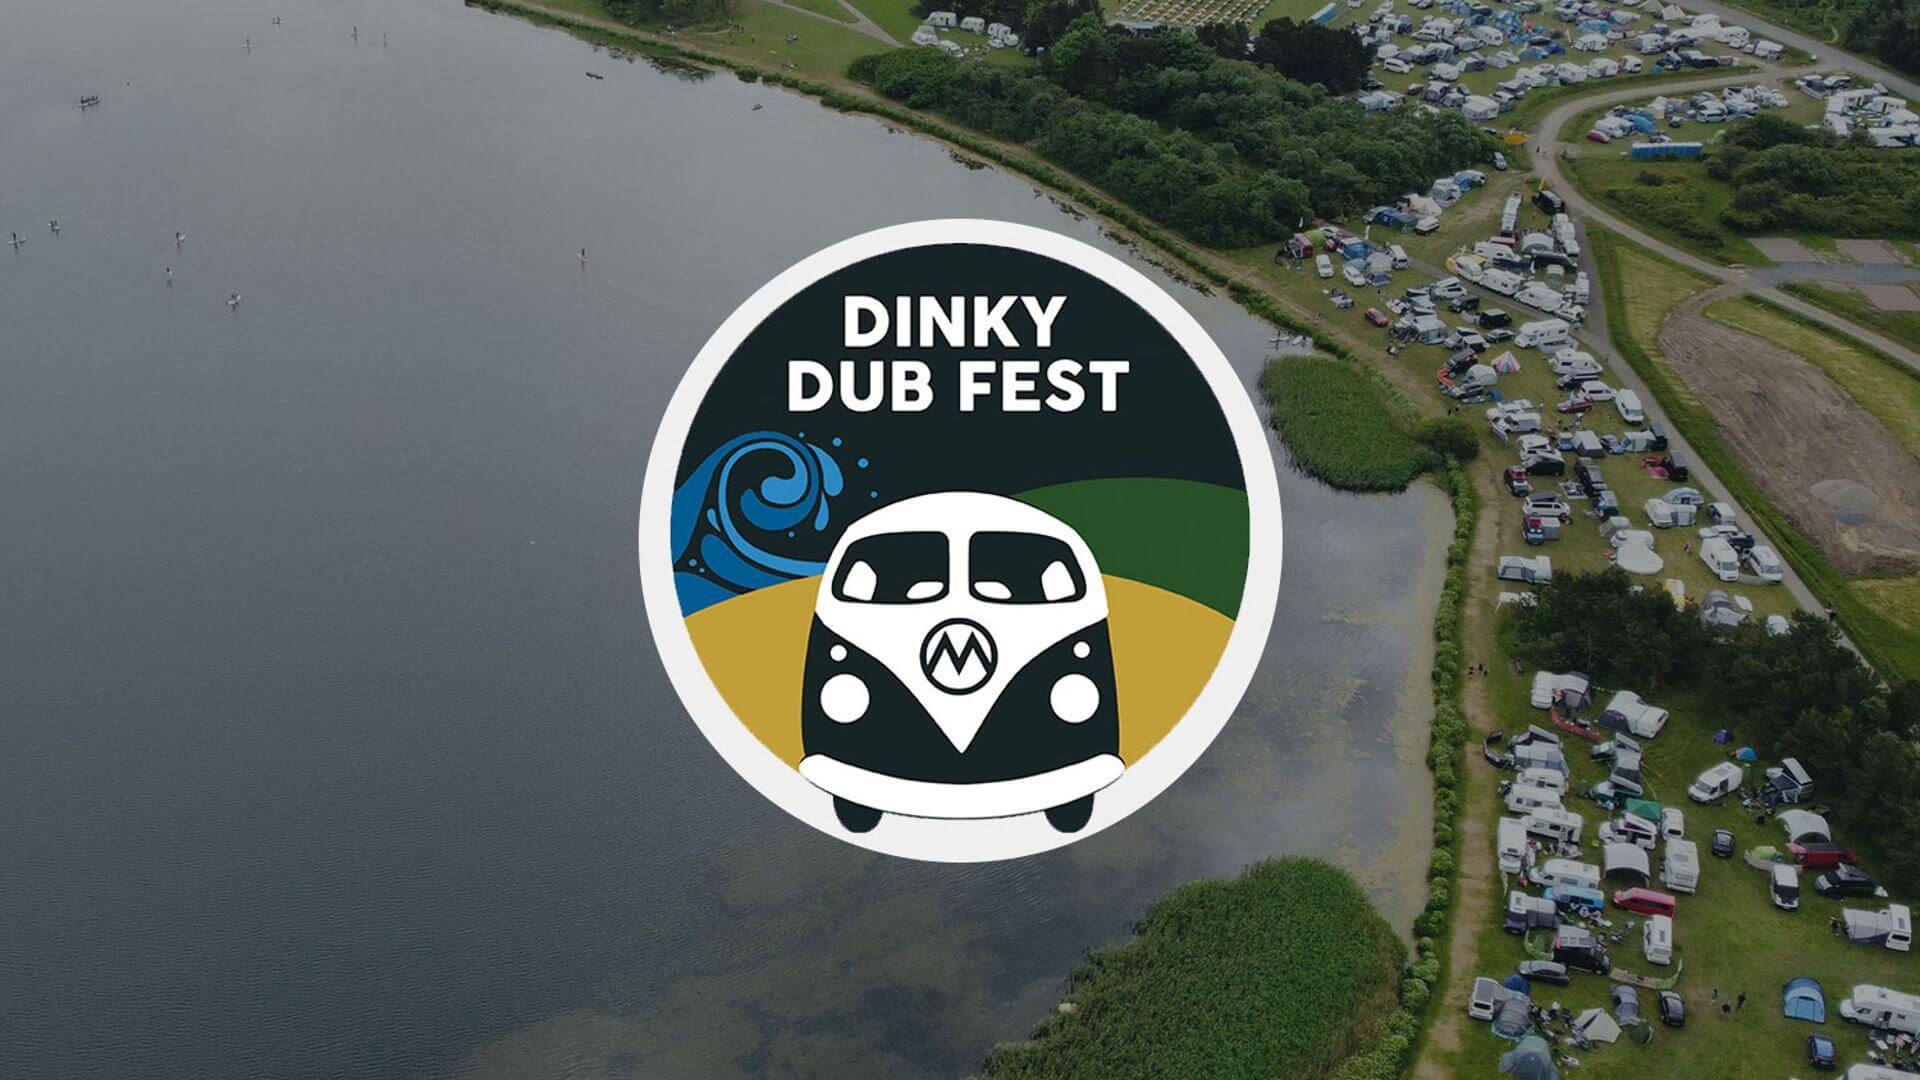 Dinky Dub Fest